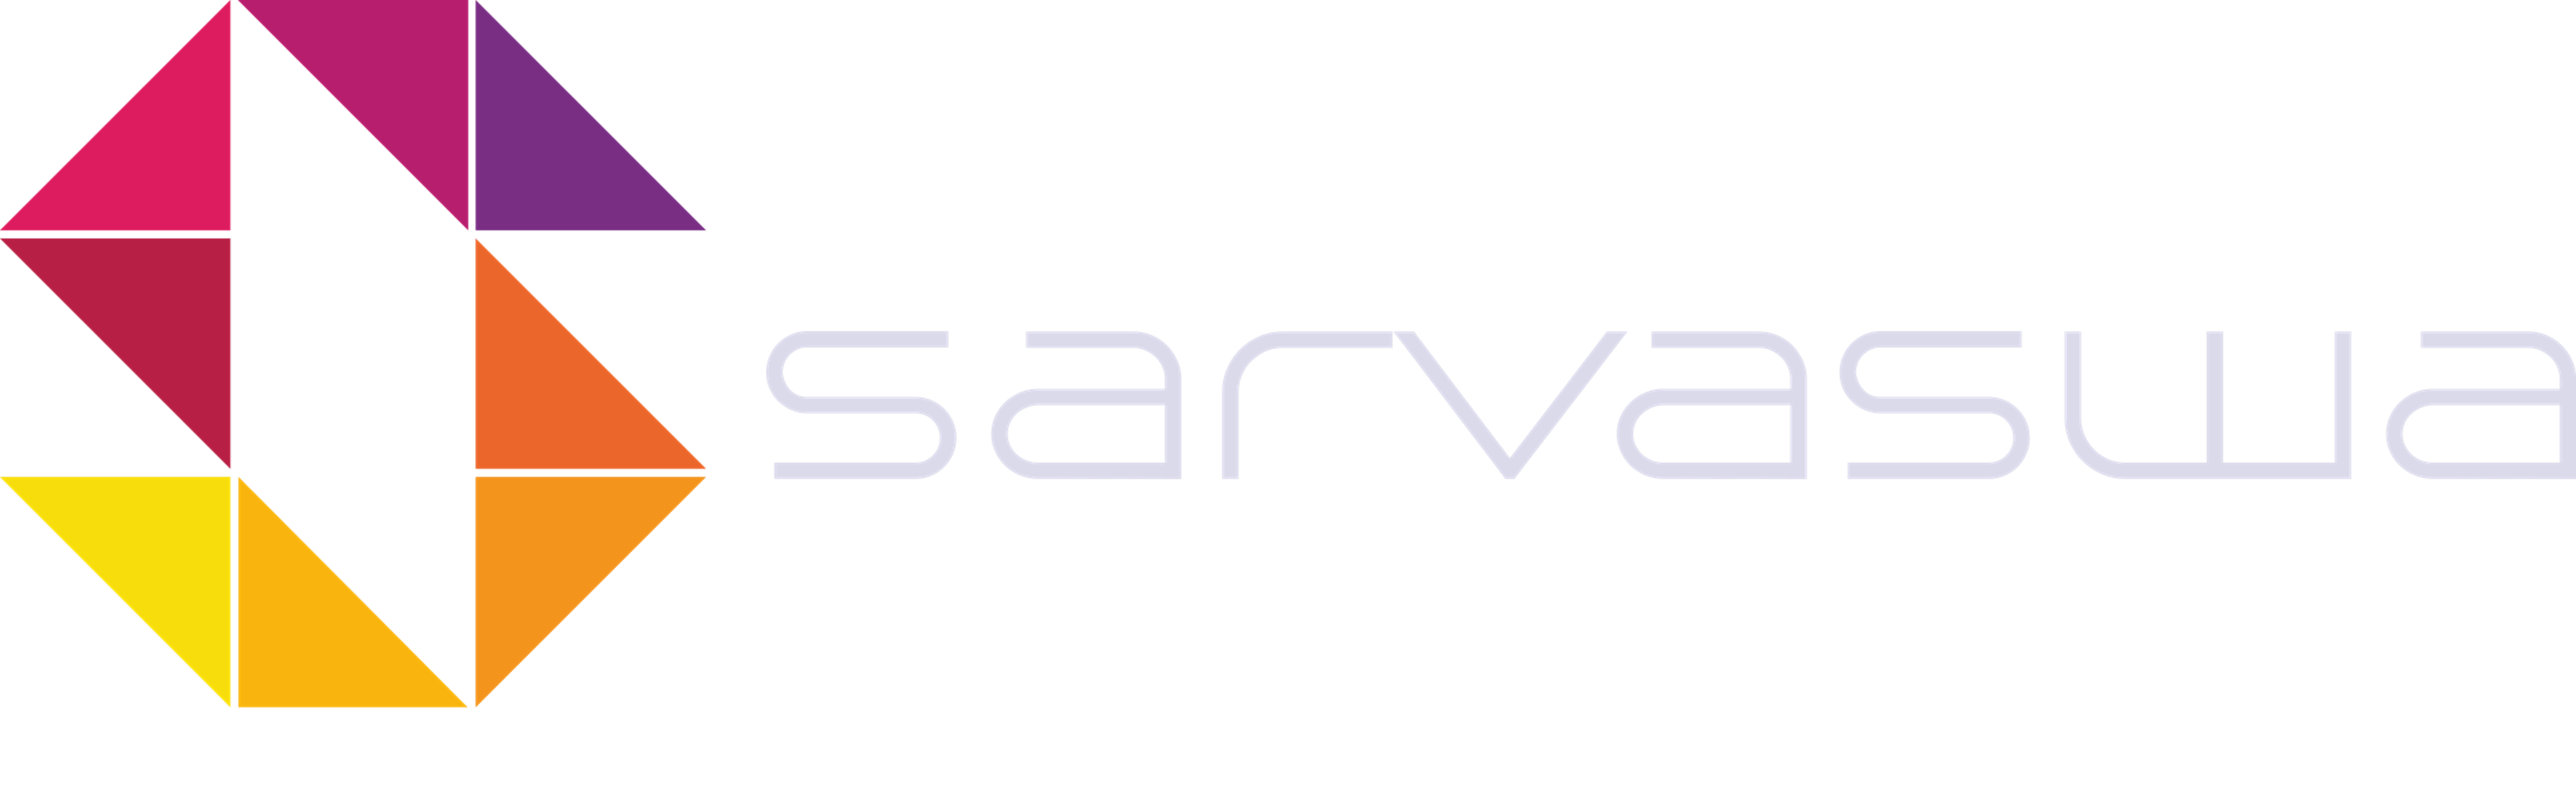 Sarvaswa